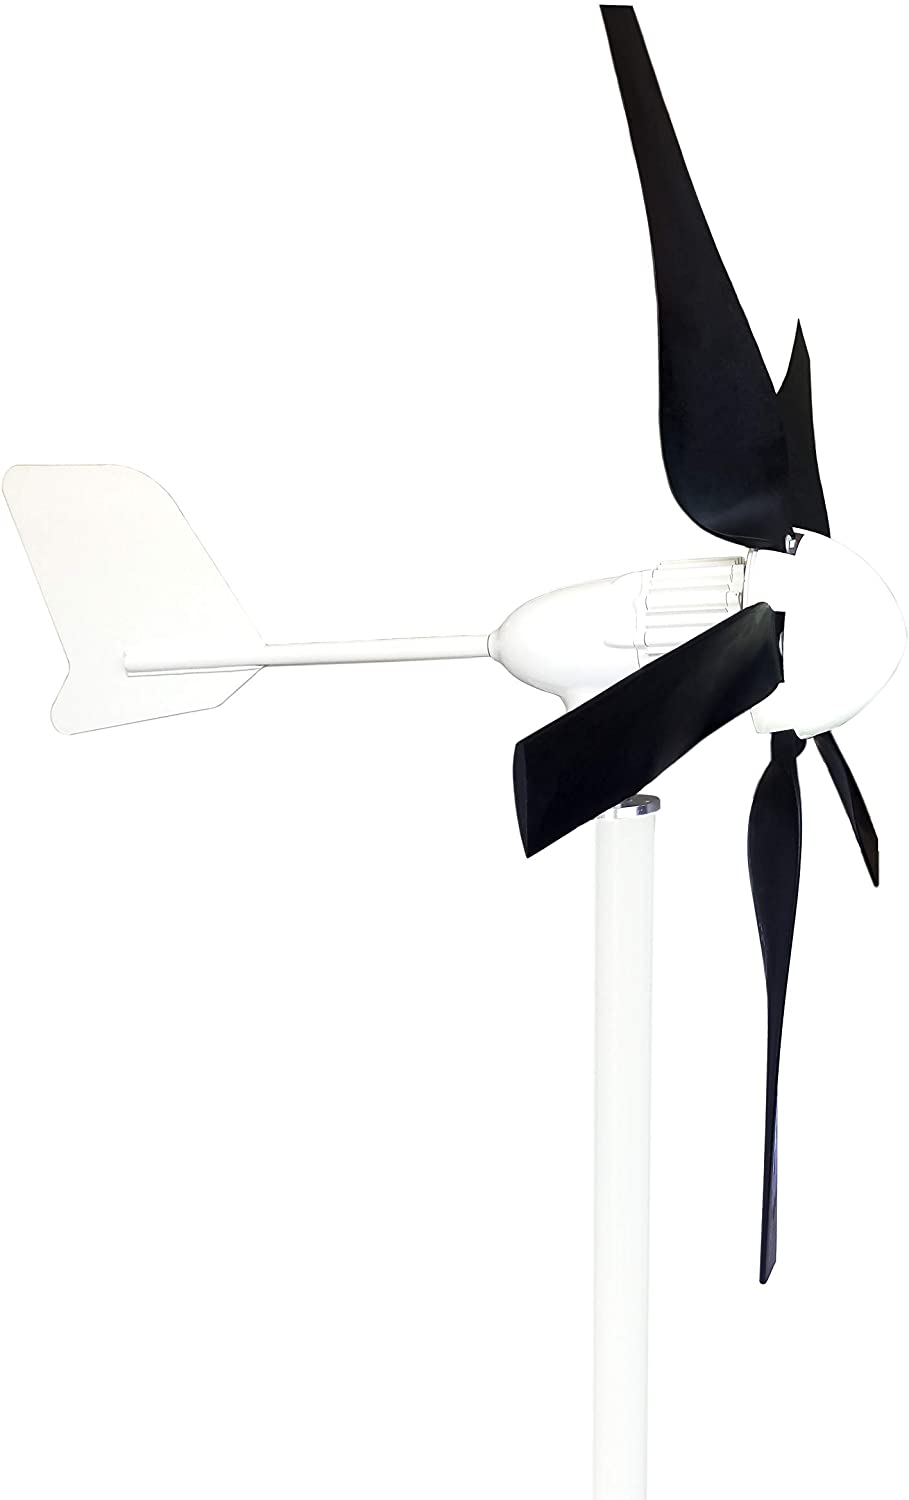 Windmax HY400 500 Watt Max 12-Volt 5-Blade Wind Generator Kit